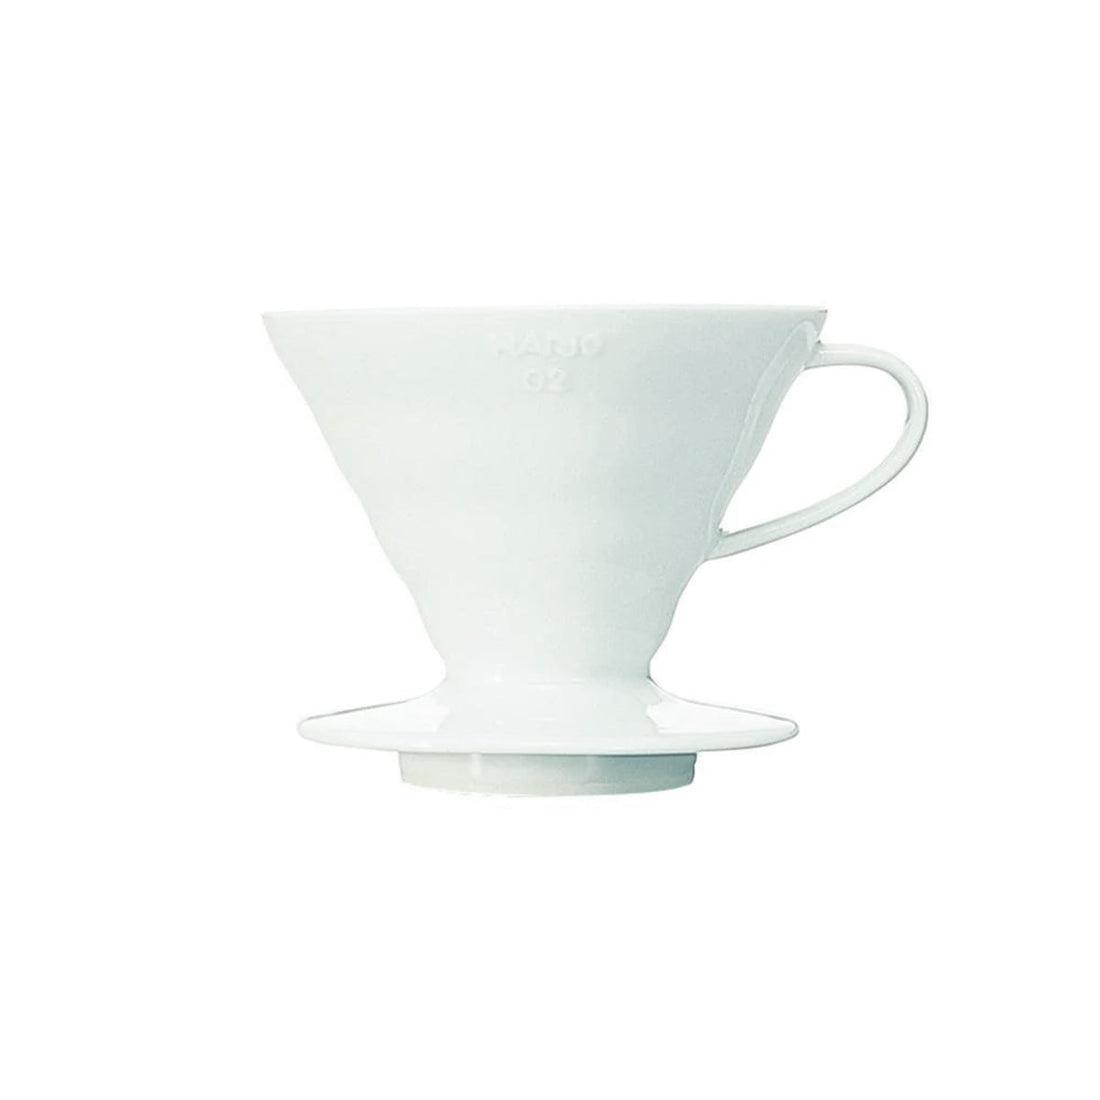 Hario, Hario Bloom V60 Ceramic Coffee Dripper Size 02 - White, Redber Coffee